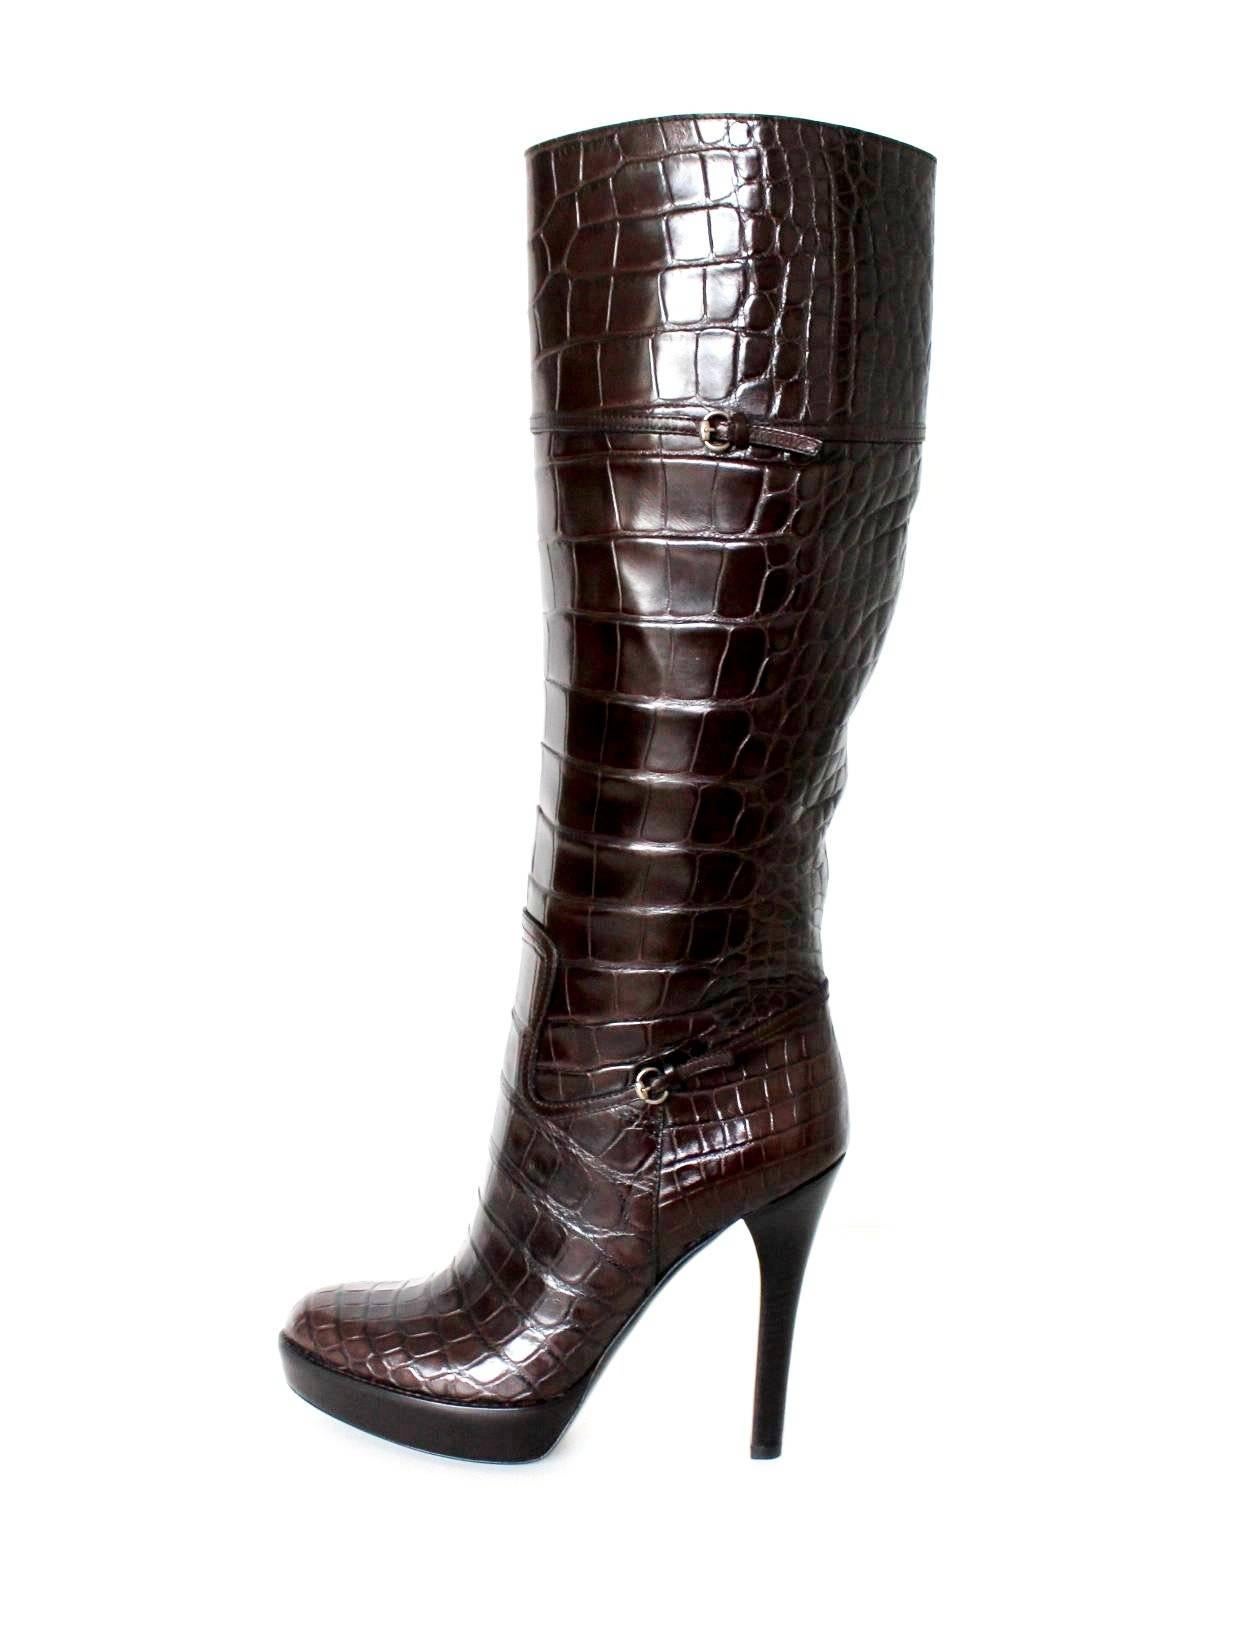 NEU Gucci Exotische braune extra hohe Alligatorhaut High Heels Stiefel 17899 $ 41 (Schwarz) im Angebot